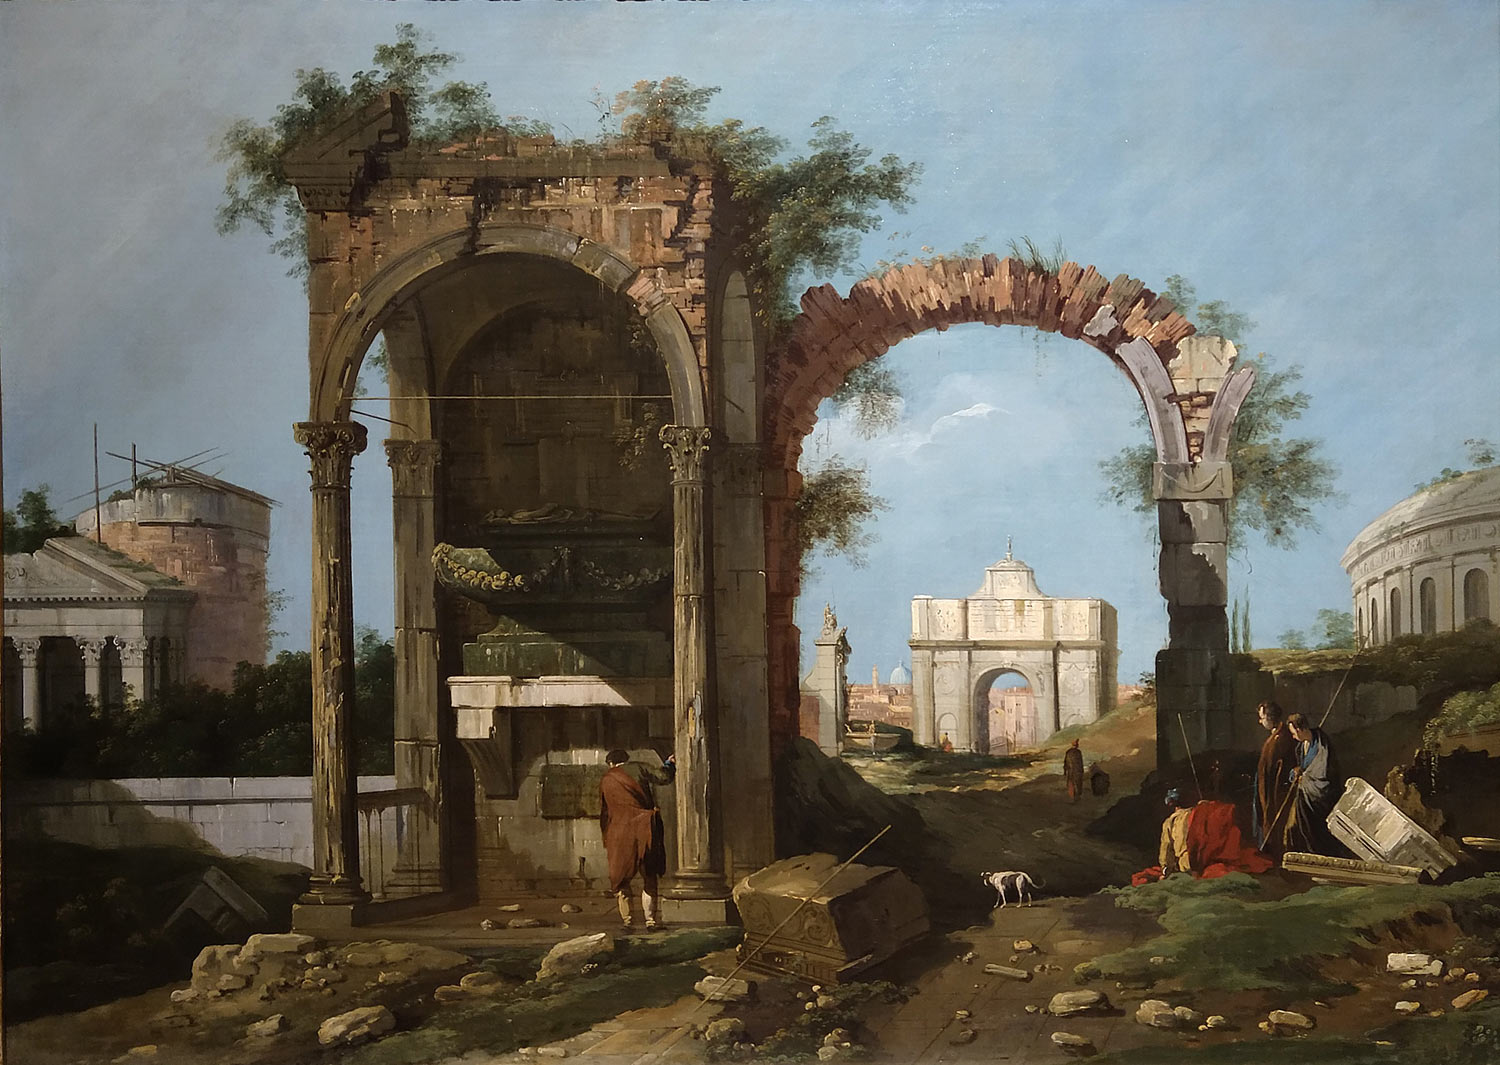 Canaletto, Capriccio architettonico con rovine ed edifici classici (1756-1757; olio su tela, 91 x 108,6 cm; Milano, Museo Poldi Pezzoli)
